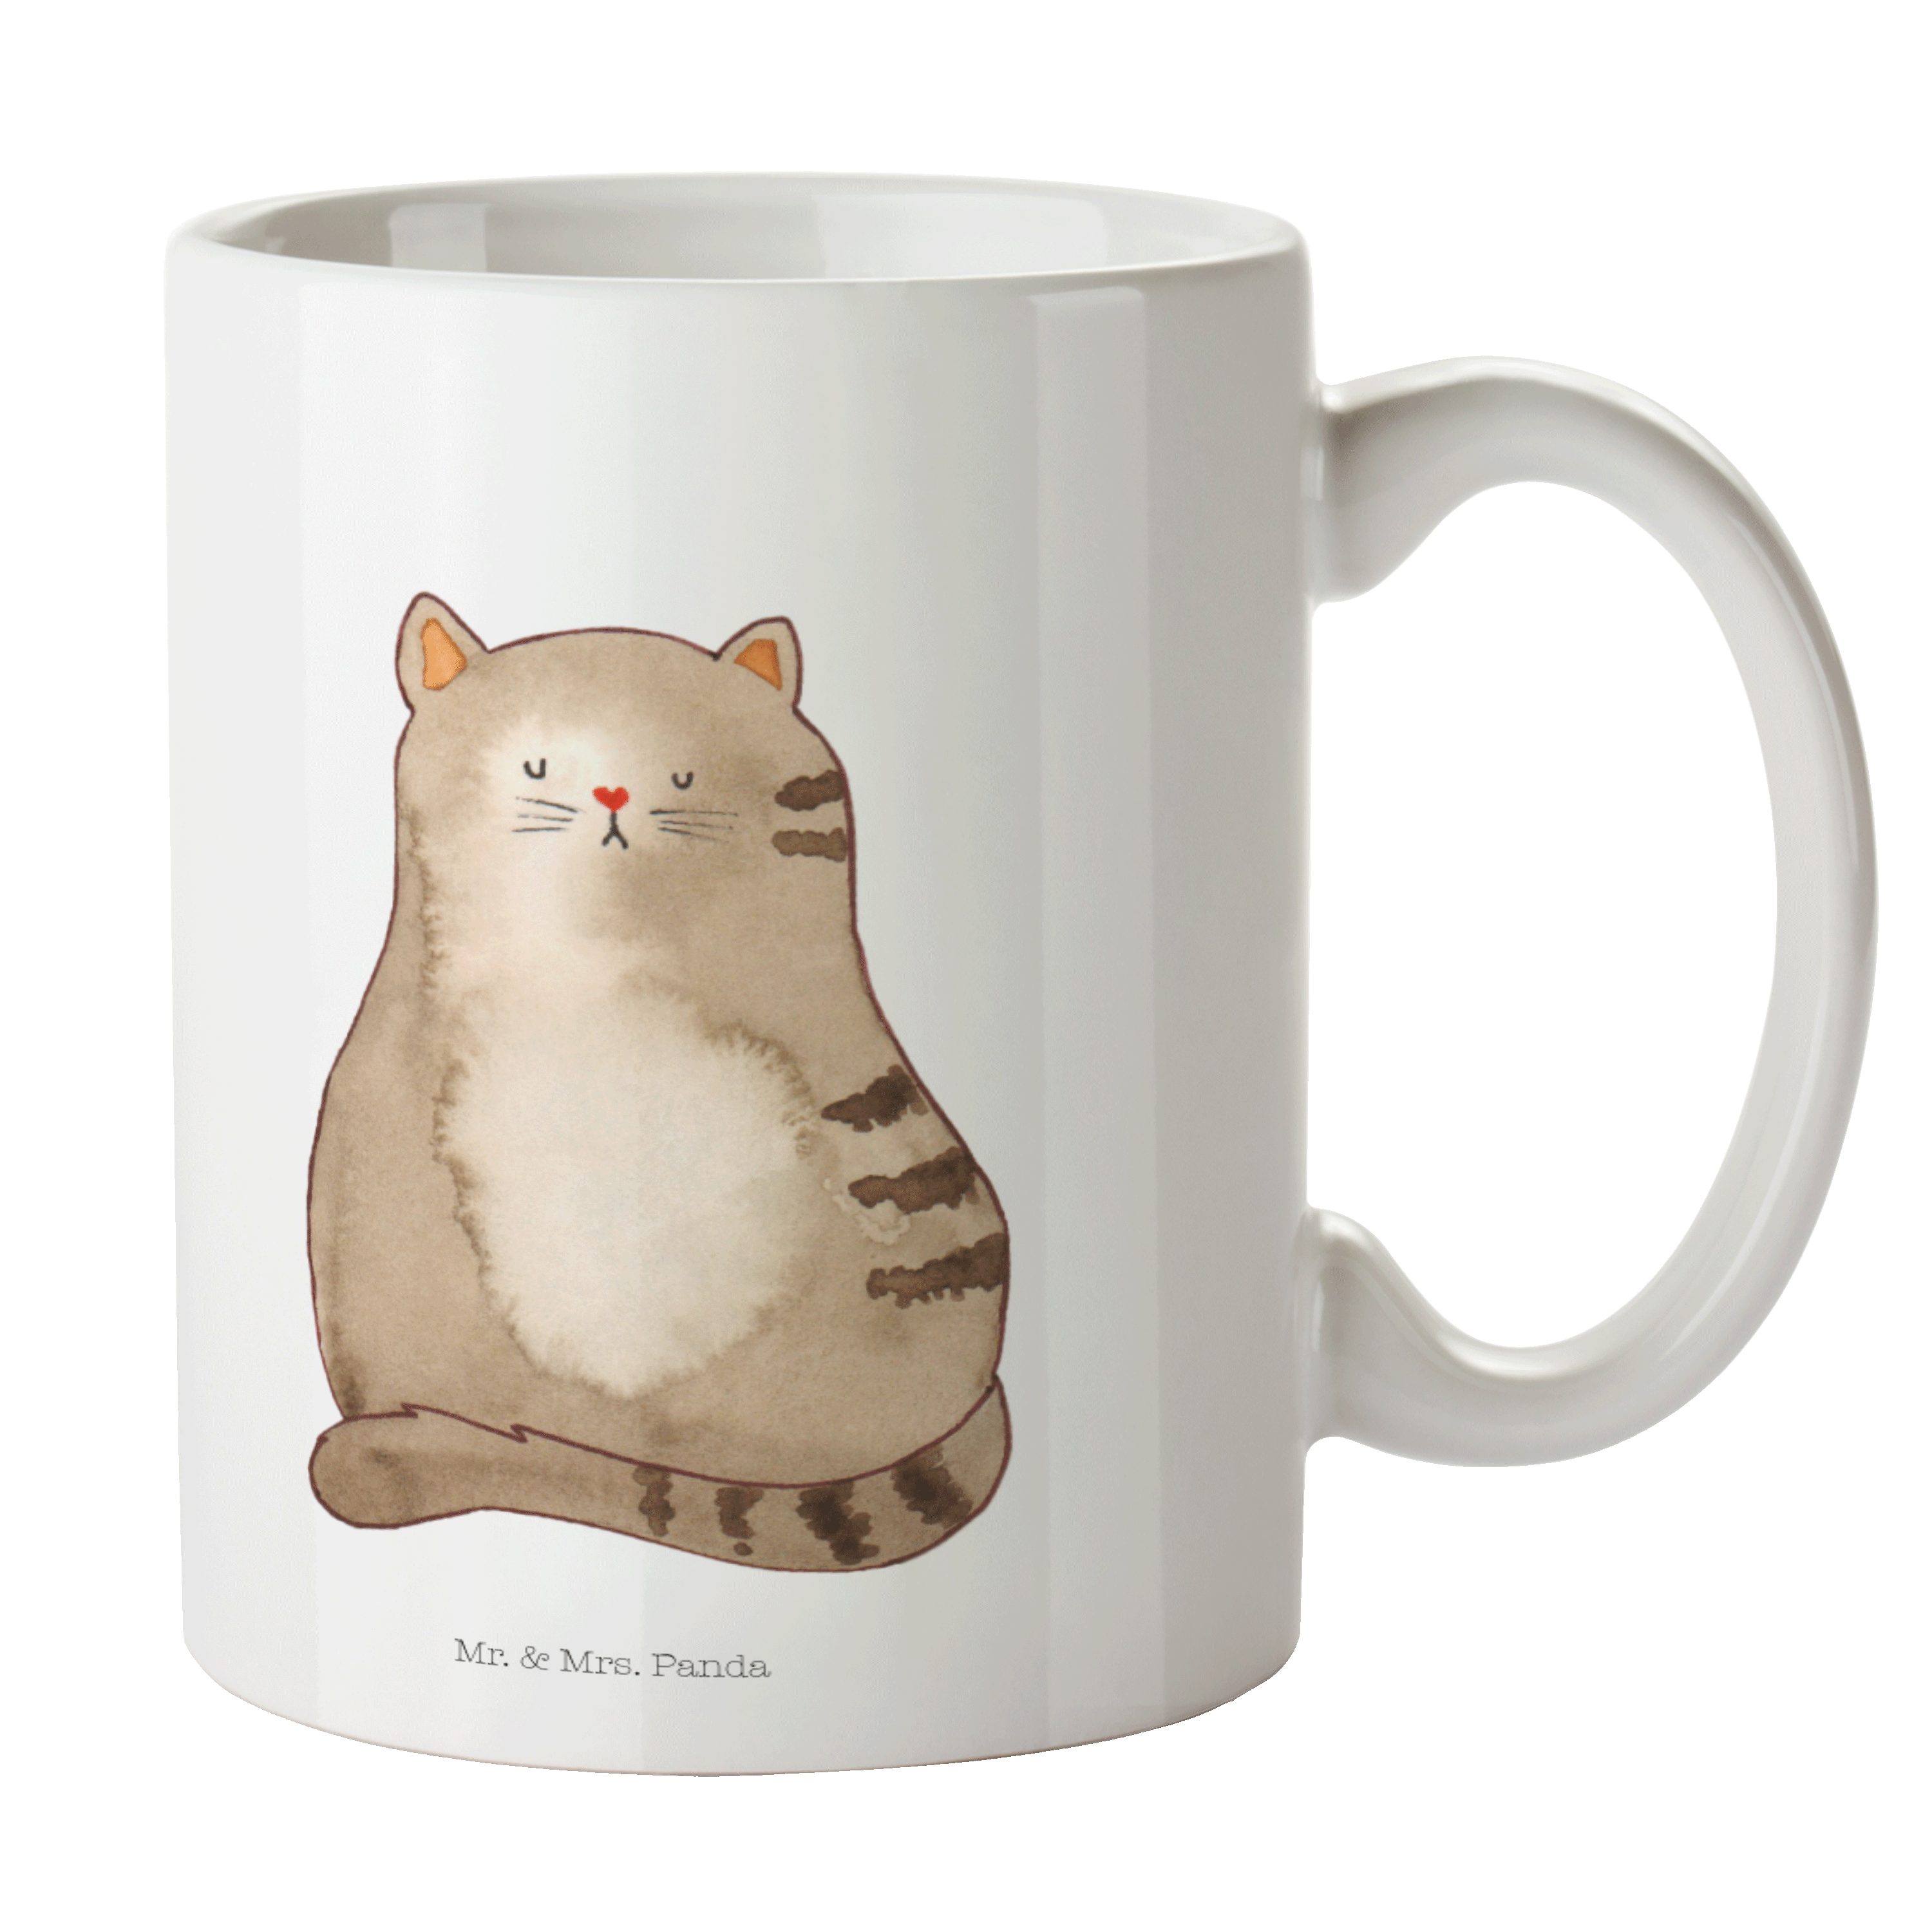 Mr. & Mrs. Panda Tasse Katze sitzend - Weiß - Geschenk, Herz, Cats, Katzenprodukte, Büro Tas, Keramik